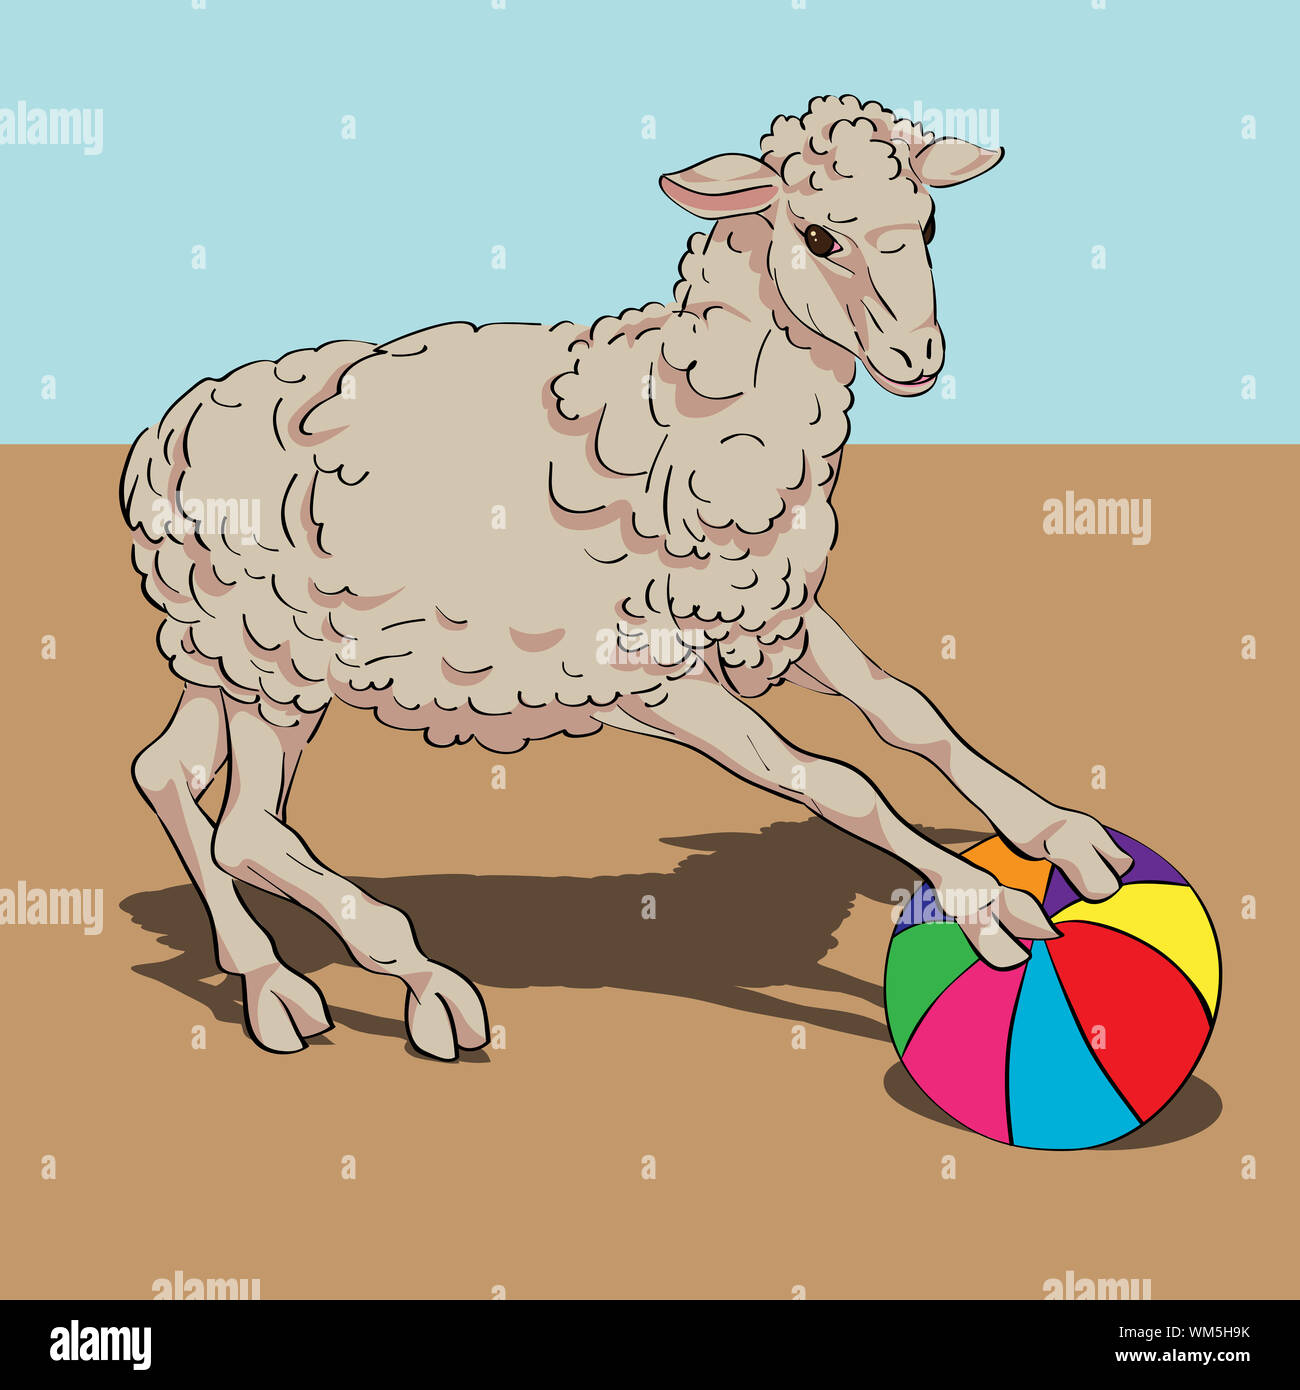 Schafe spielen die Kugel Karte, handgezeichnete Abbildung über einen Vintage farbigen Hintergrund Stockfoto